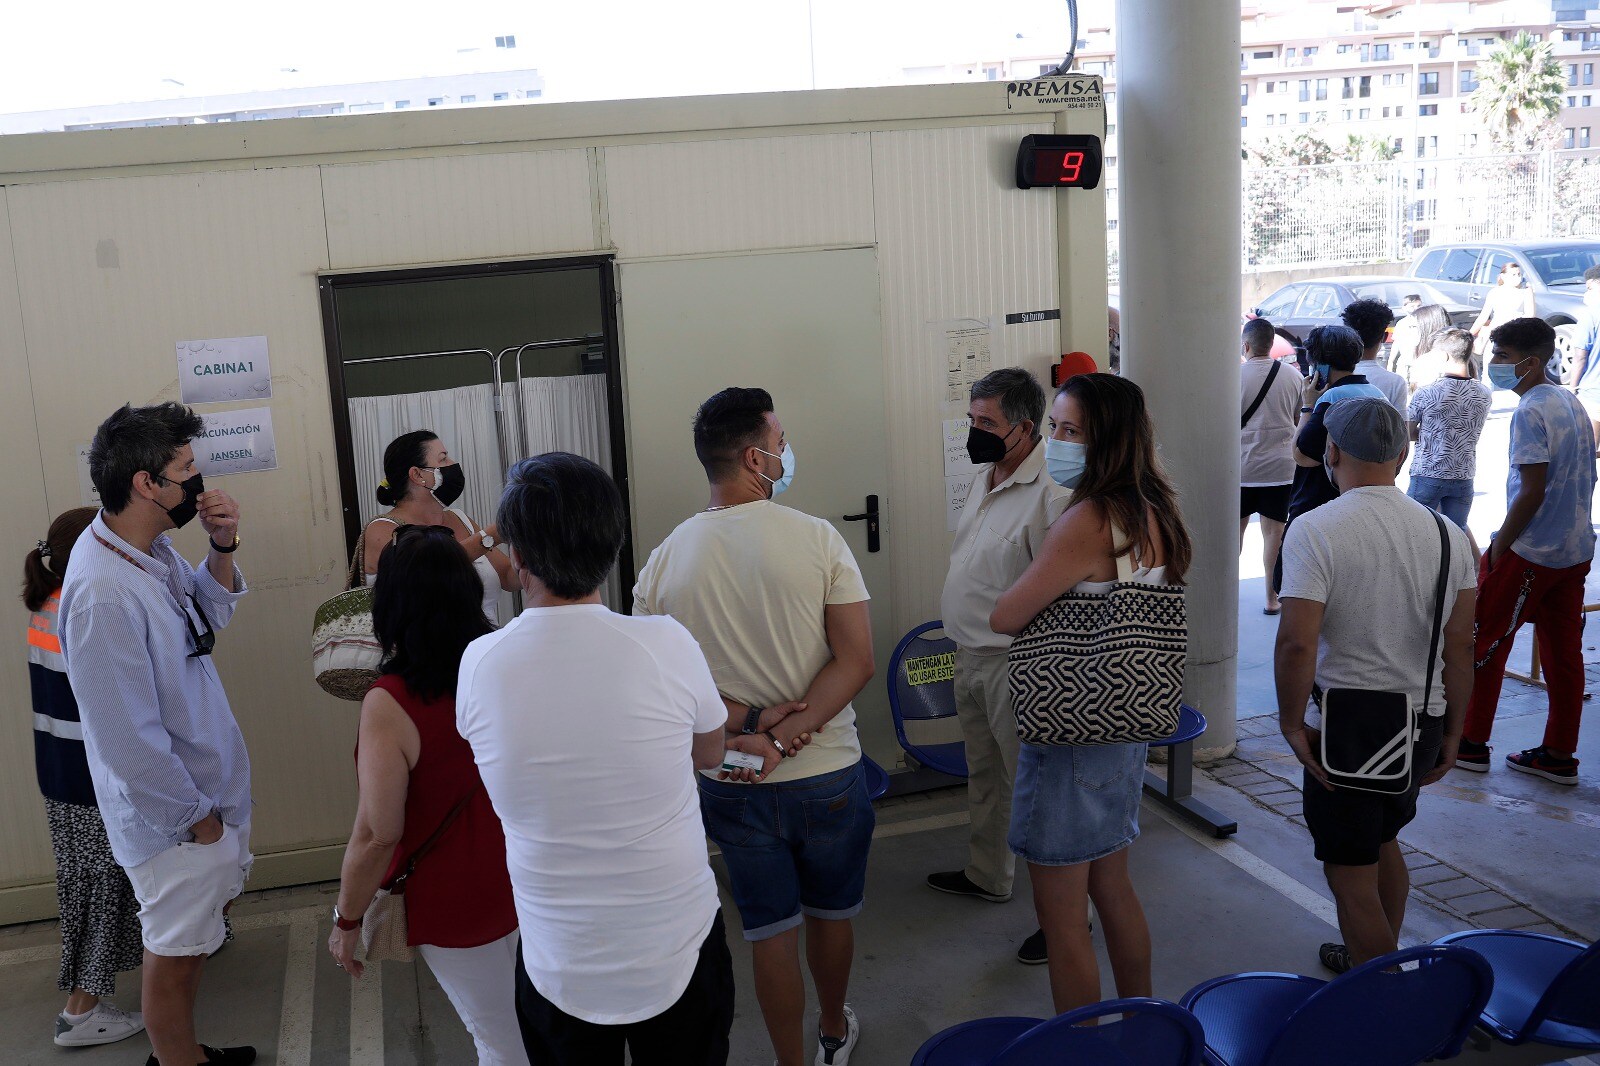 Dos horas antes de que comenzará la inoculación con la fórmula de Janssen, ya había personas esperando la apertura de las puertas de la cabina de vacunación instalada en el aparcamiento del ambulatorio ubicado en Colonia Santa Inés - Teatinos.